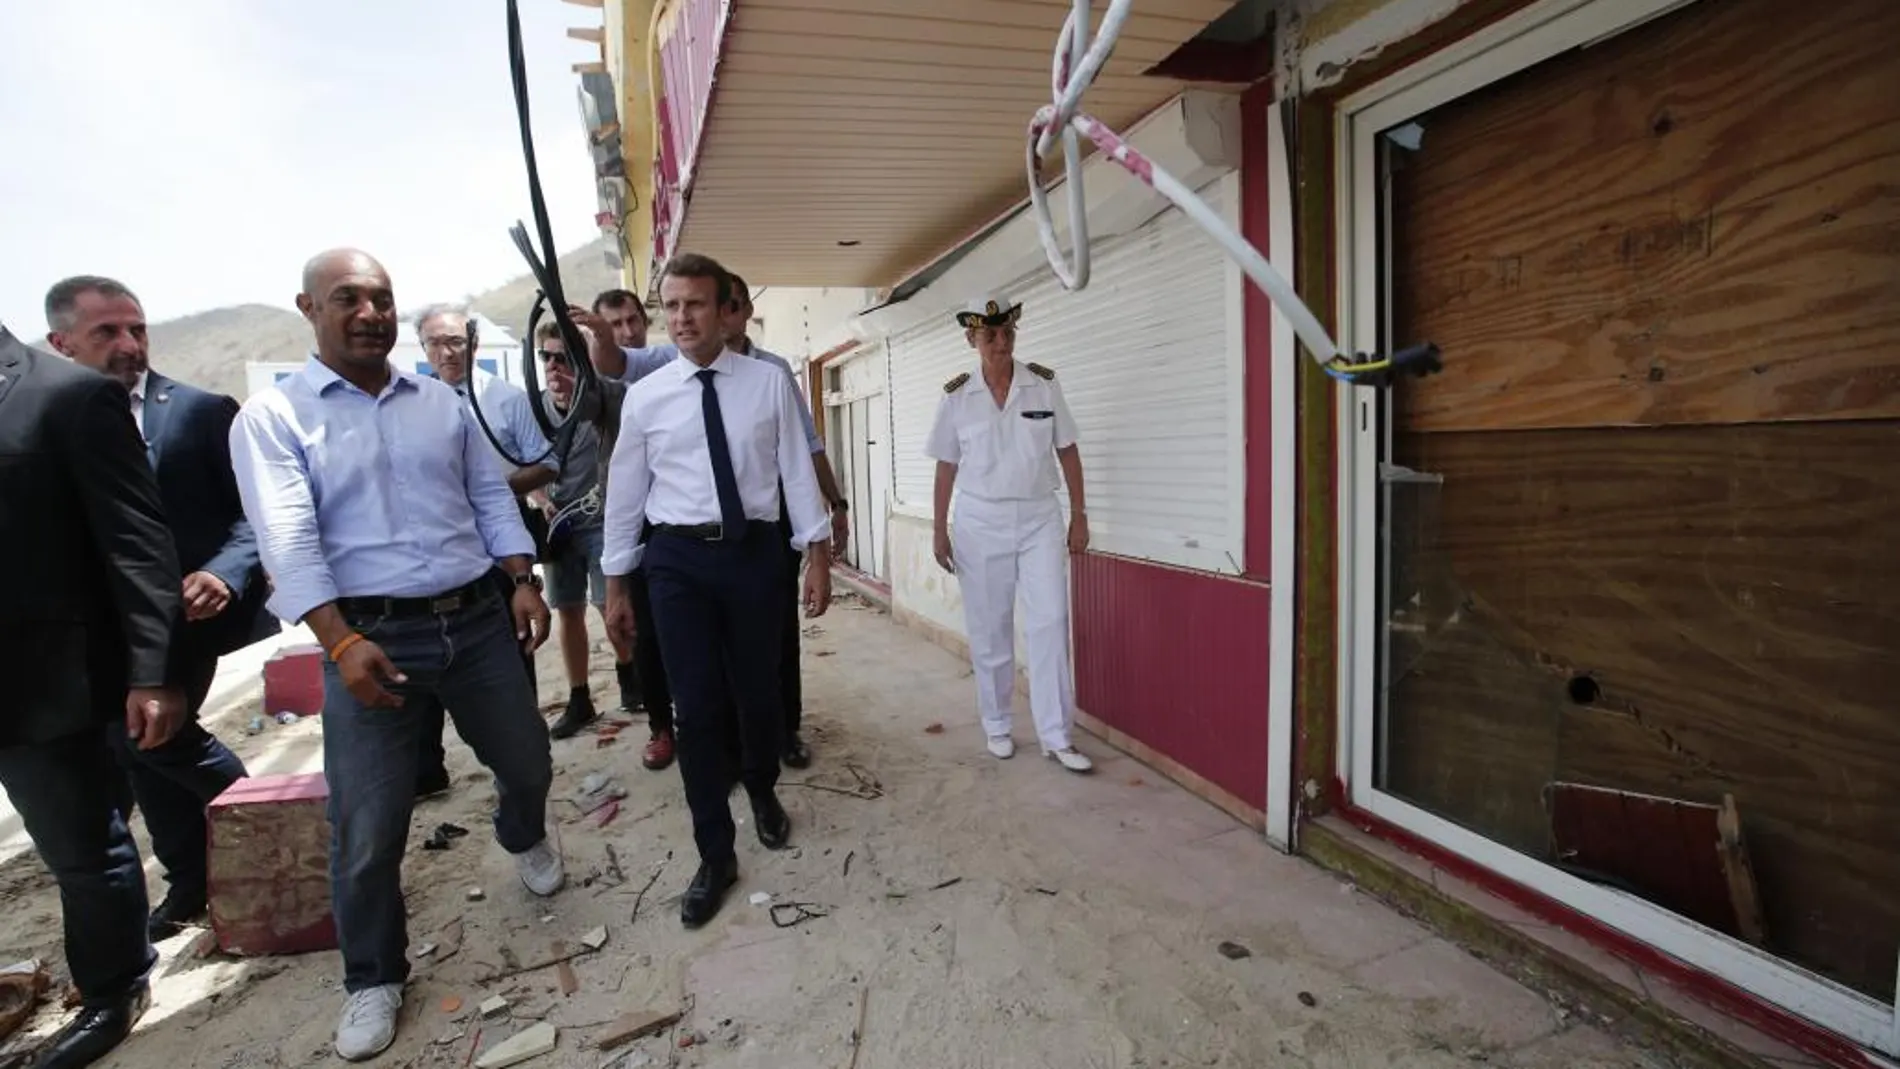 El presidente de Francia, Emmanuel Macron (c), observa los daños a una residencia durante una visita a la isla caribeña de San Martín (Francia) para evidenciar los daños causados tras el paso del huracán Irma ayer